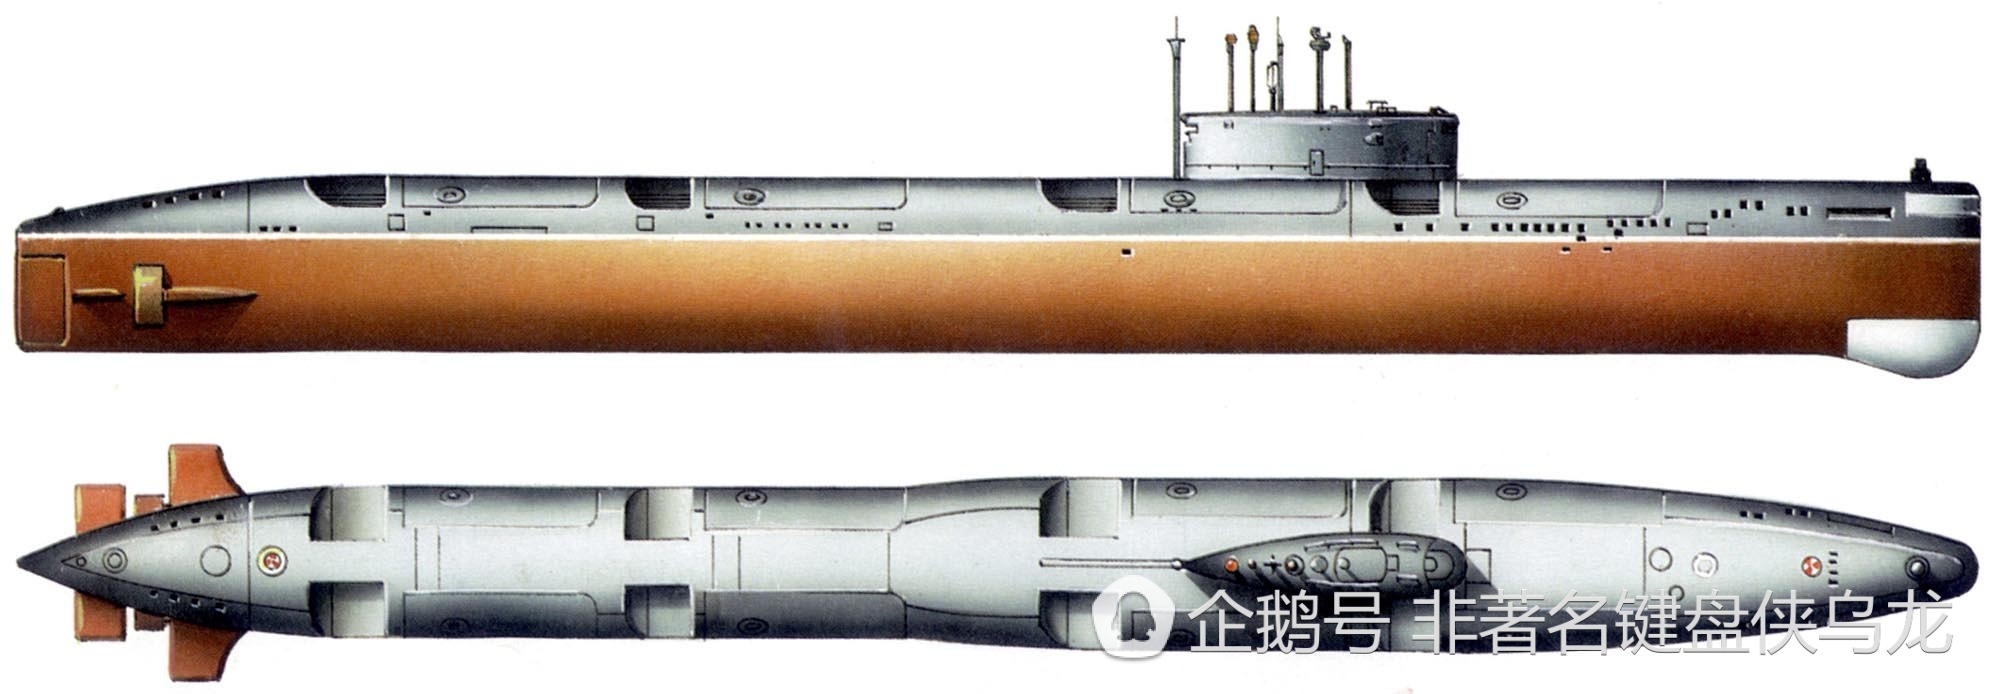 675型巡航导弹核潜艇